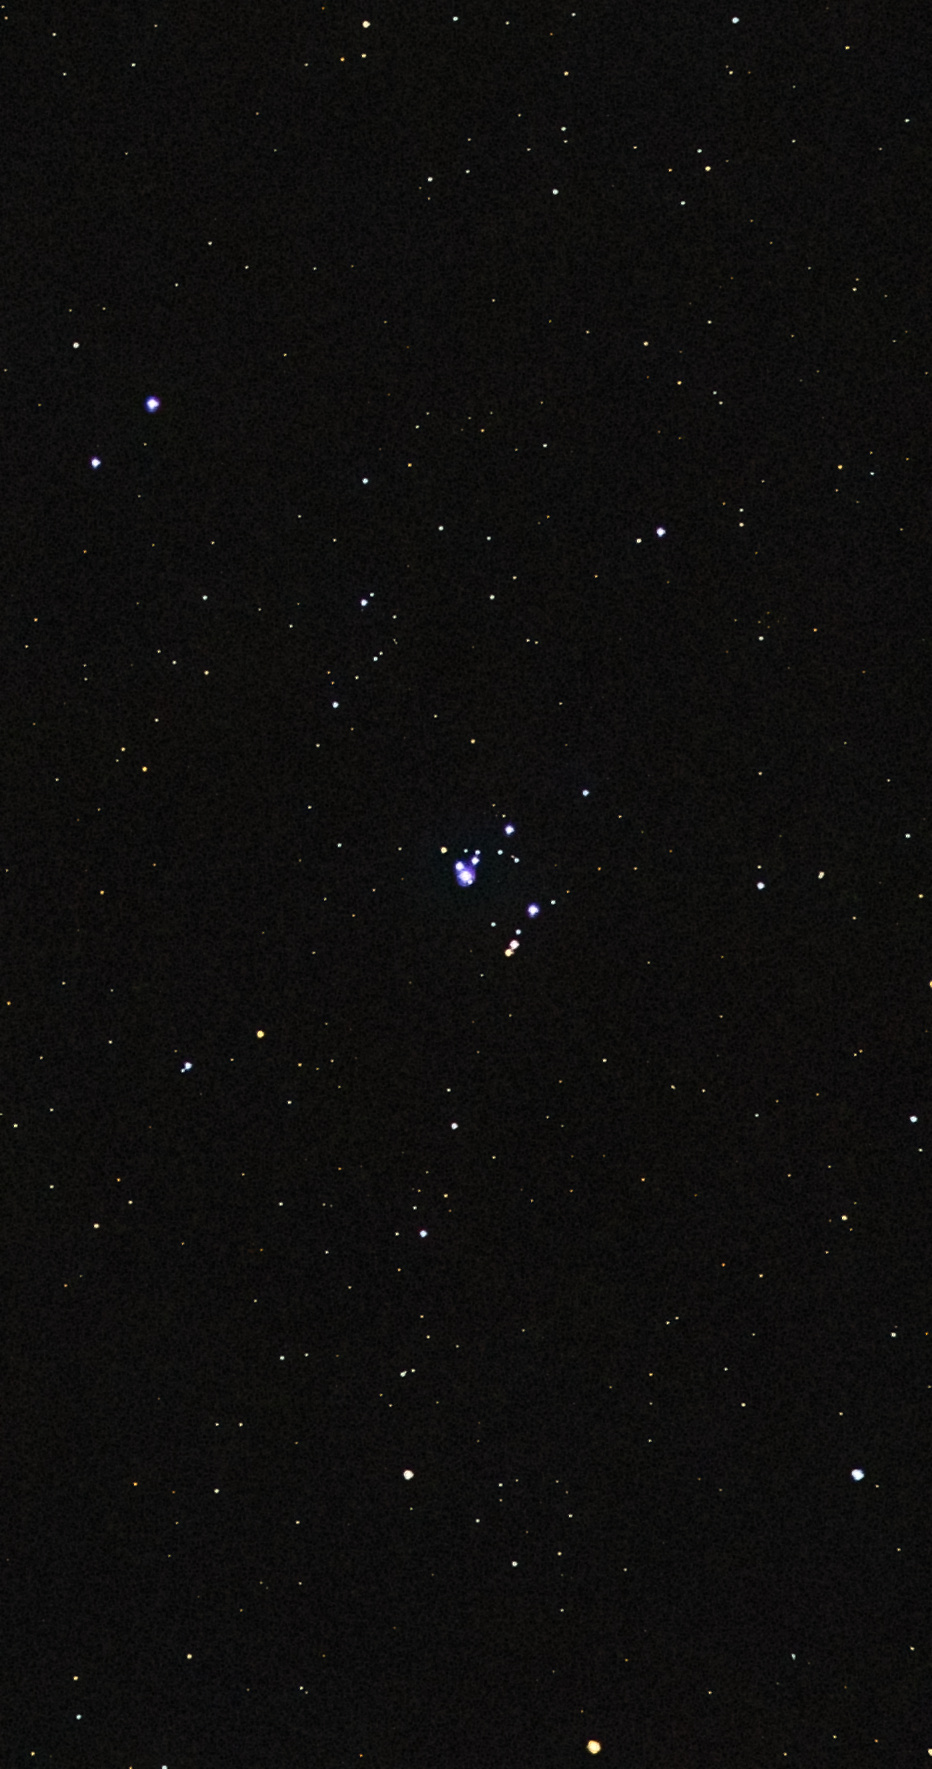 NGC2169